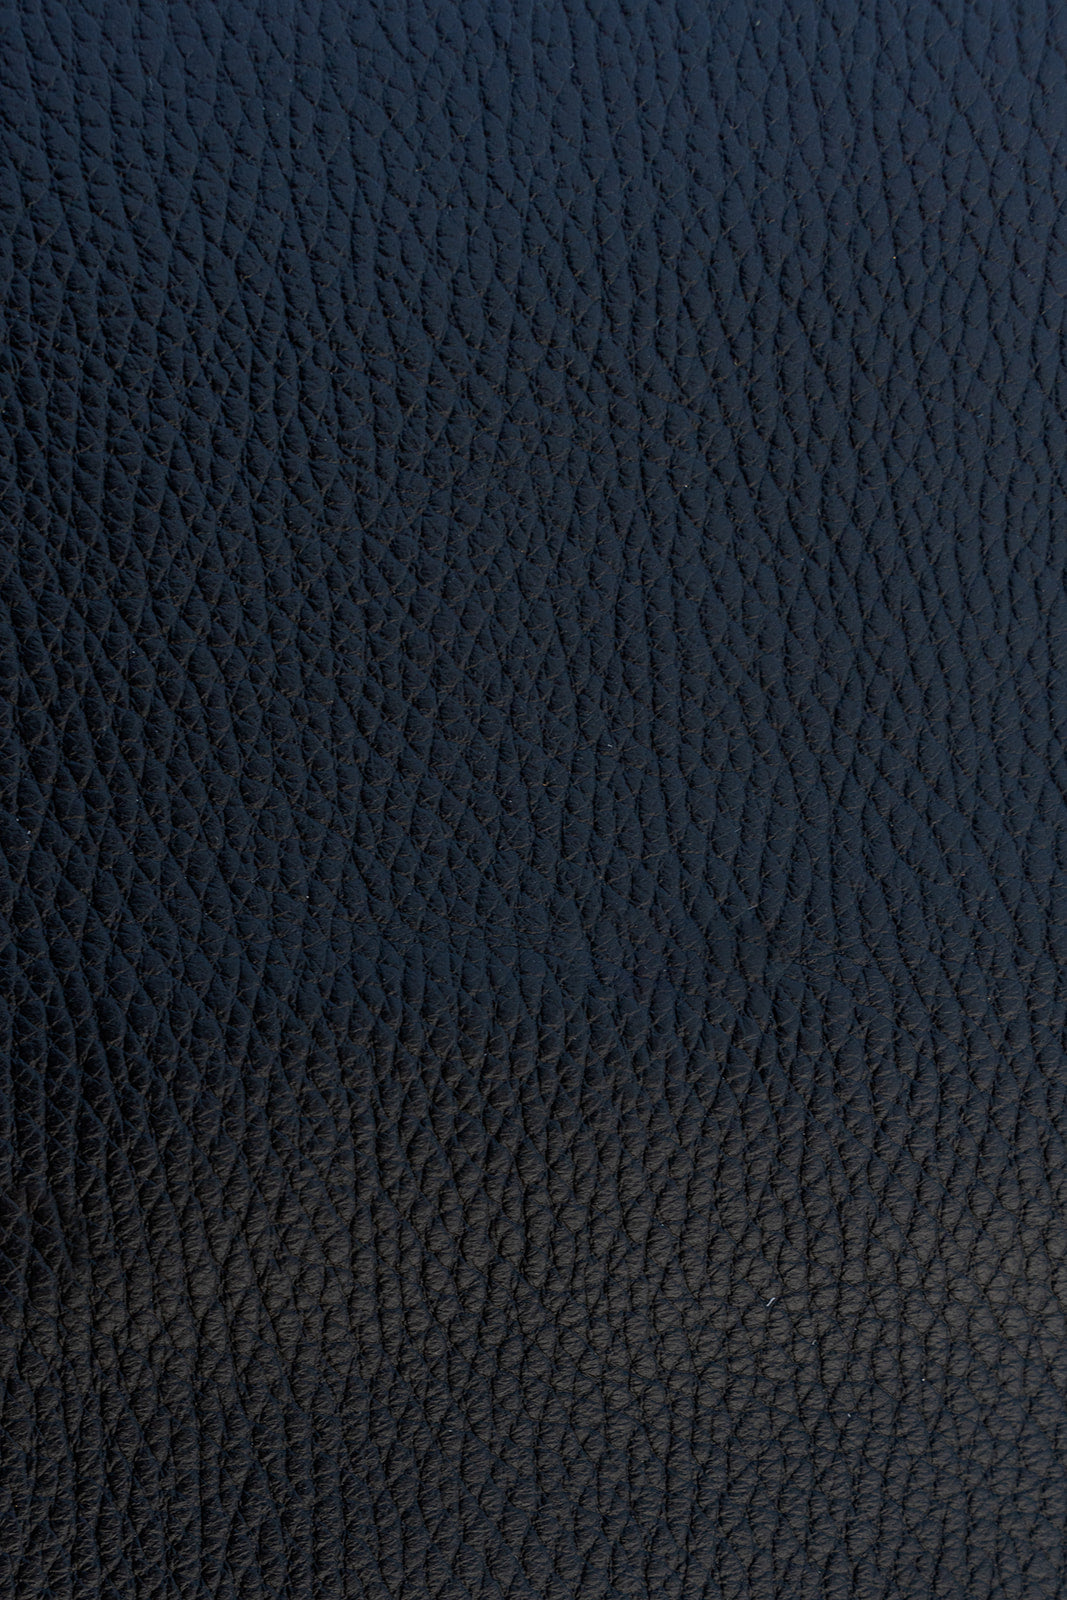 JL shoulder strap leather - Caviar black